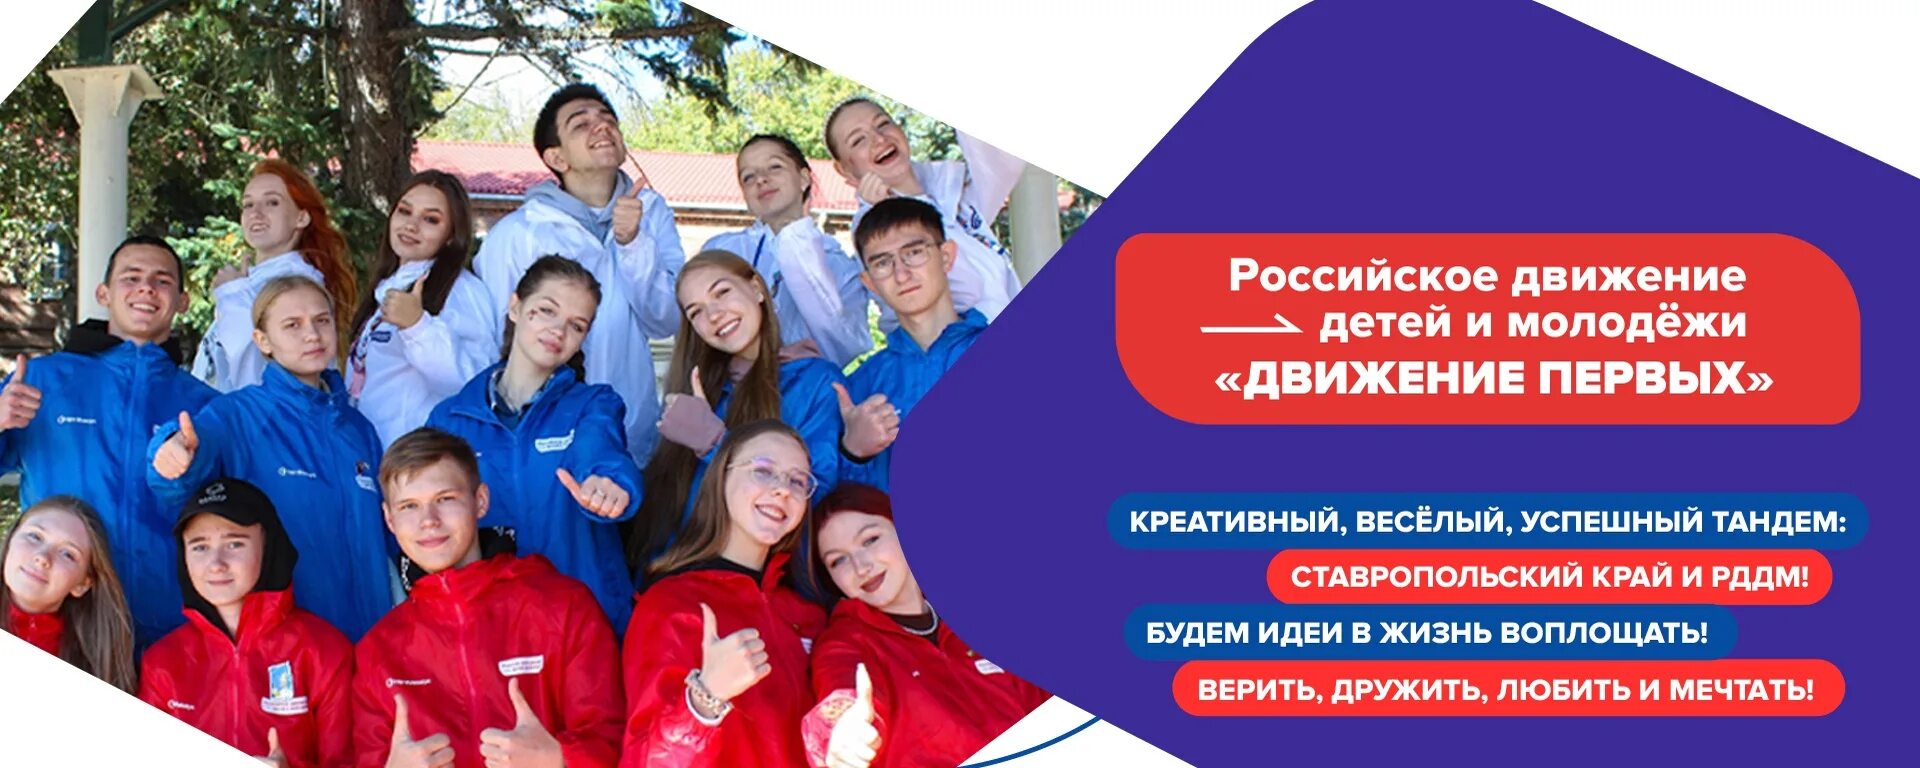 Зарегистрироваться в движении первых ребенка. Российское движение детей и молодежи. Детские и молодежные движения. Детское и молодежное движение это. Рддм- российское движение детей и молодежи «движение первых».